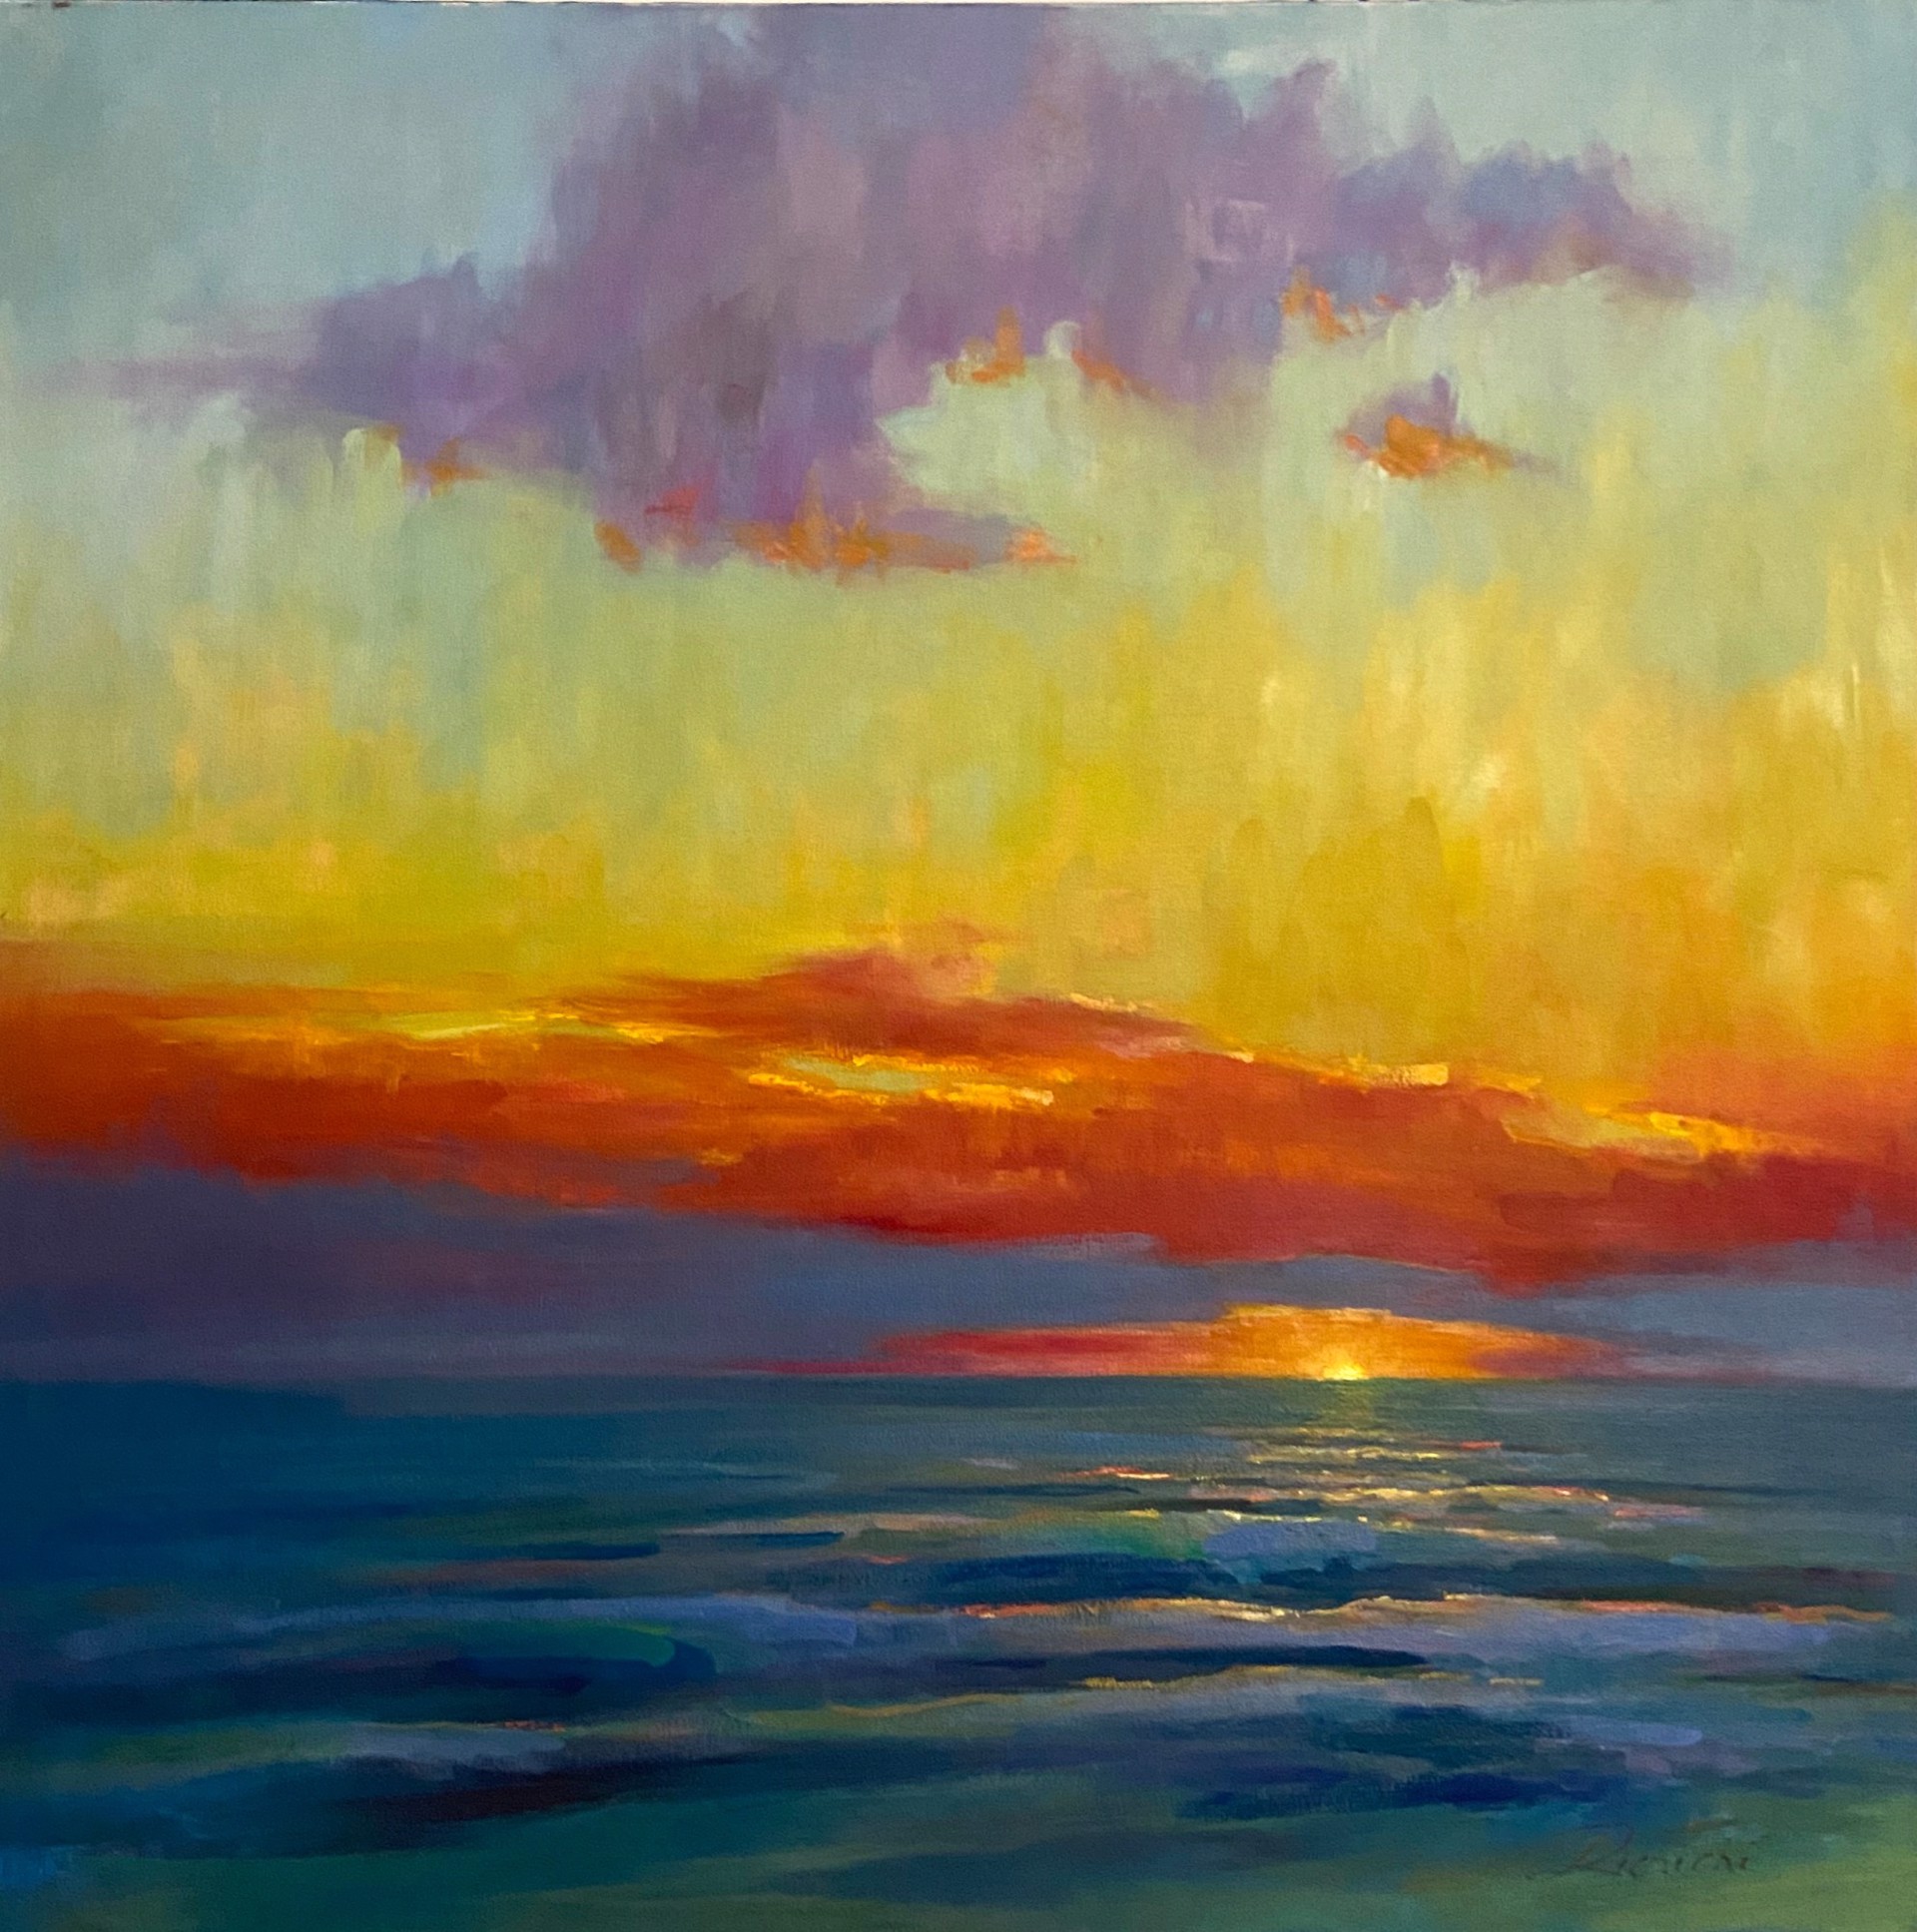 Sunset on the Gulf by Linda Richichi